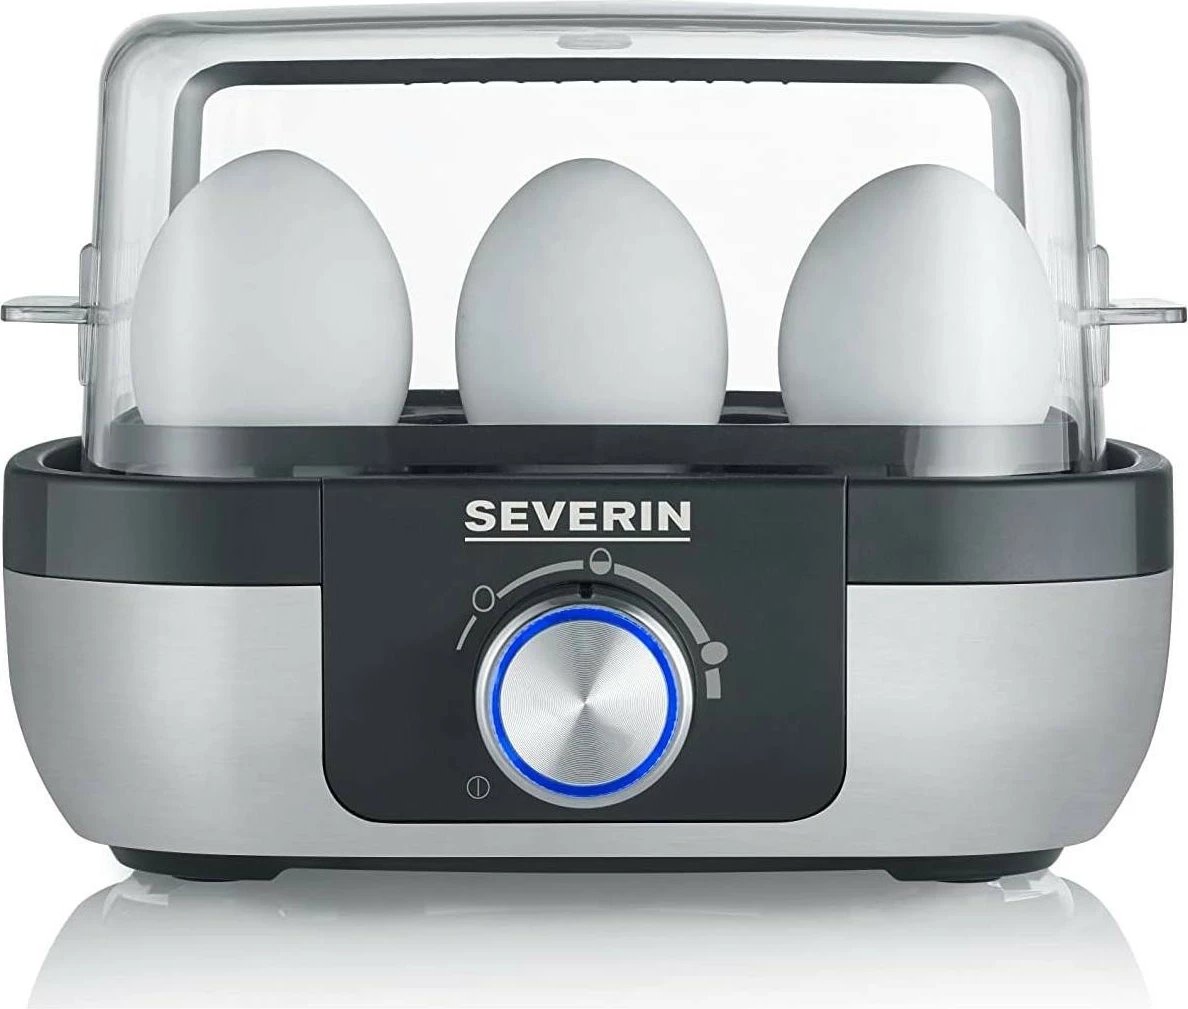 Pajisje për zierje vezësh Severin EK 3169, 420W, ngjyrë zi-argjendtë